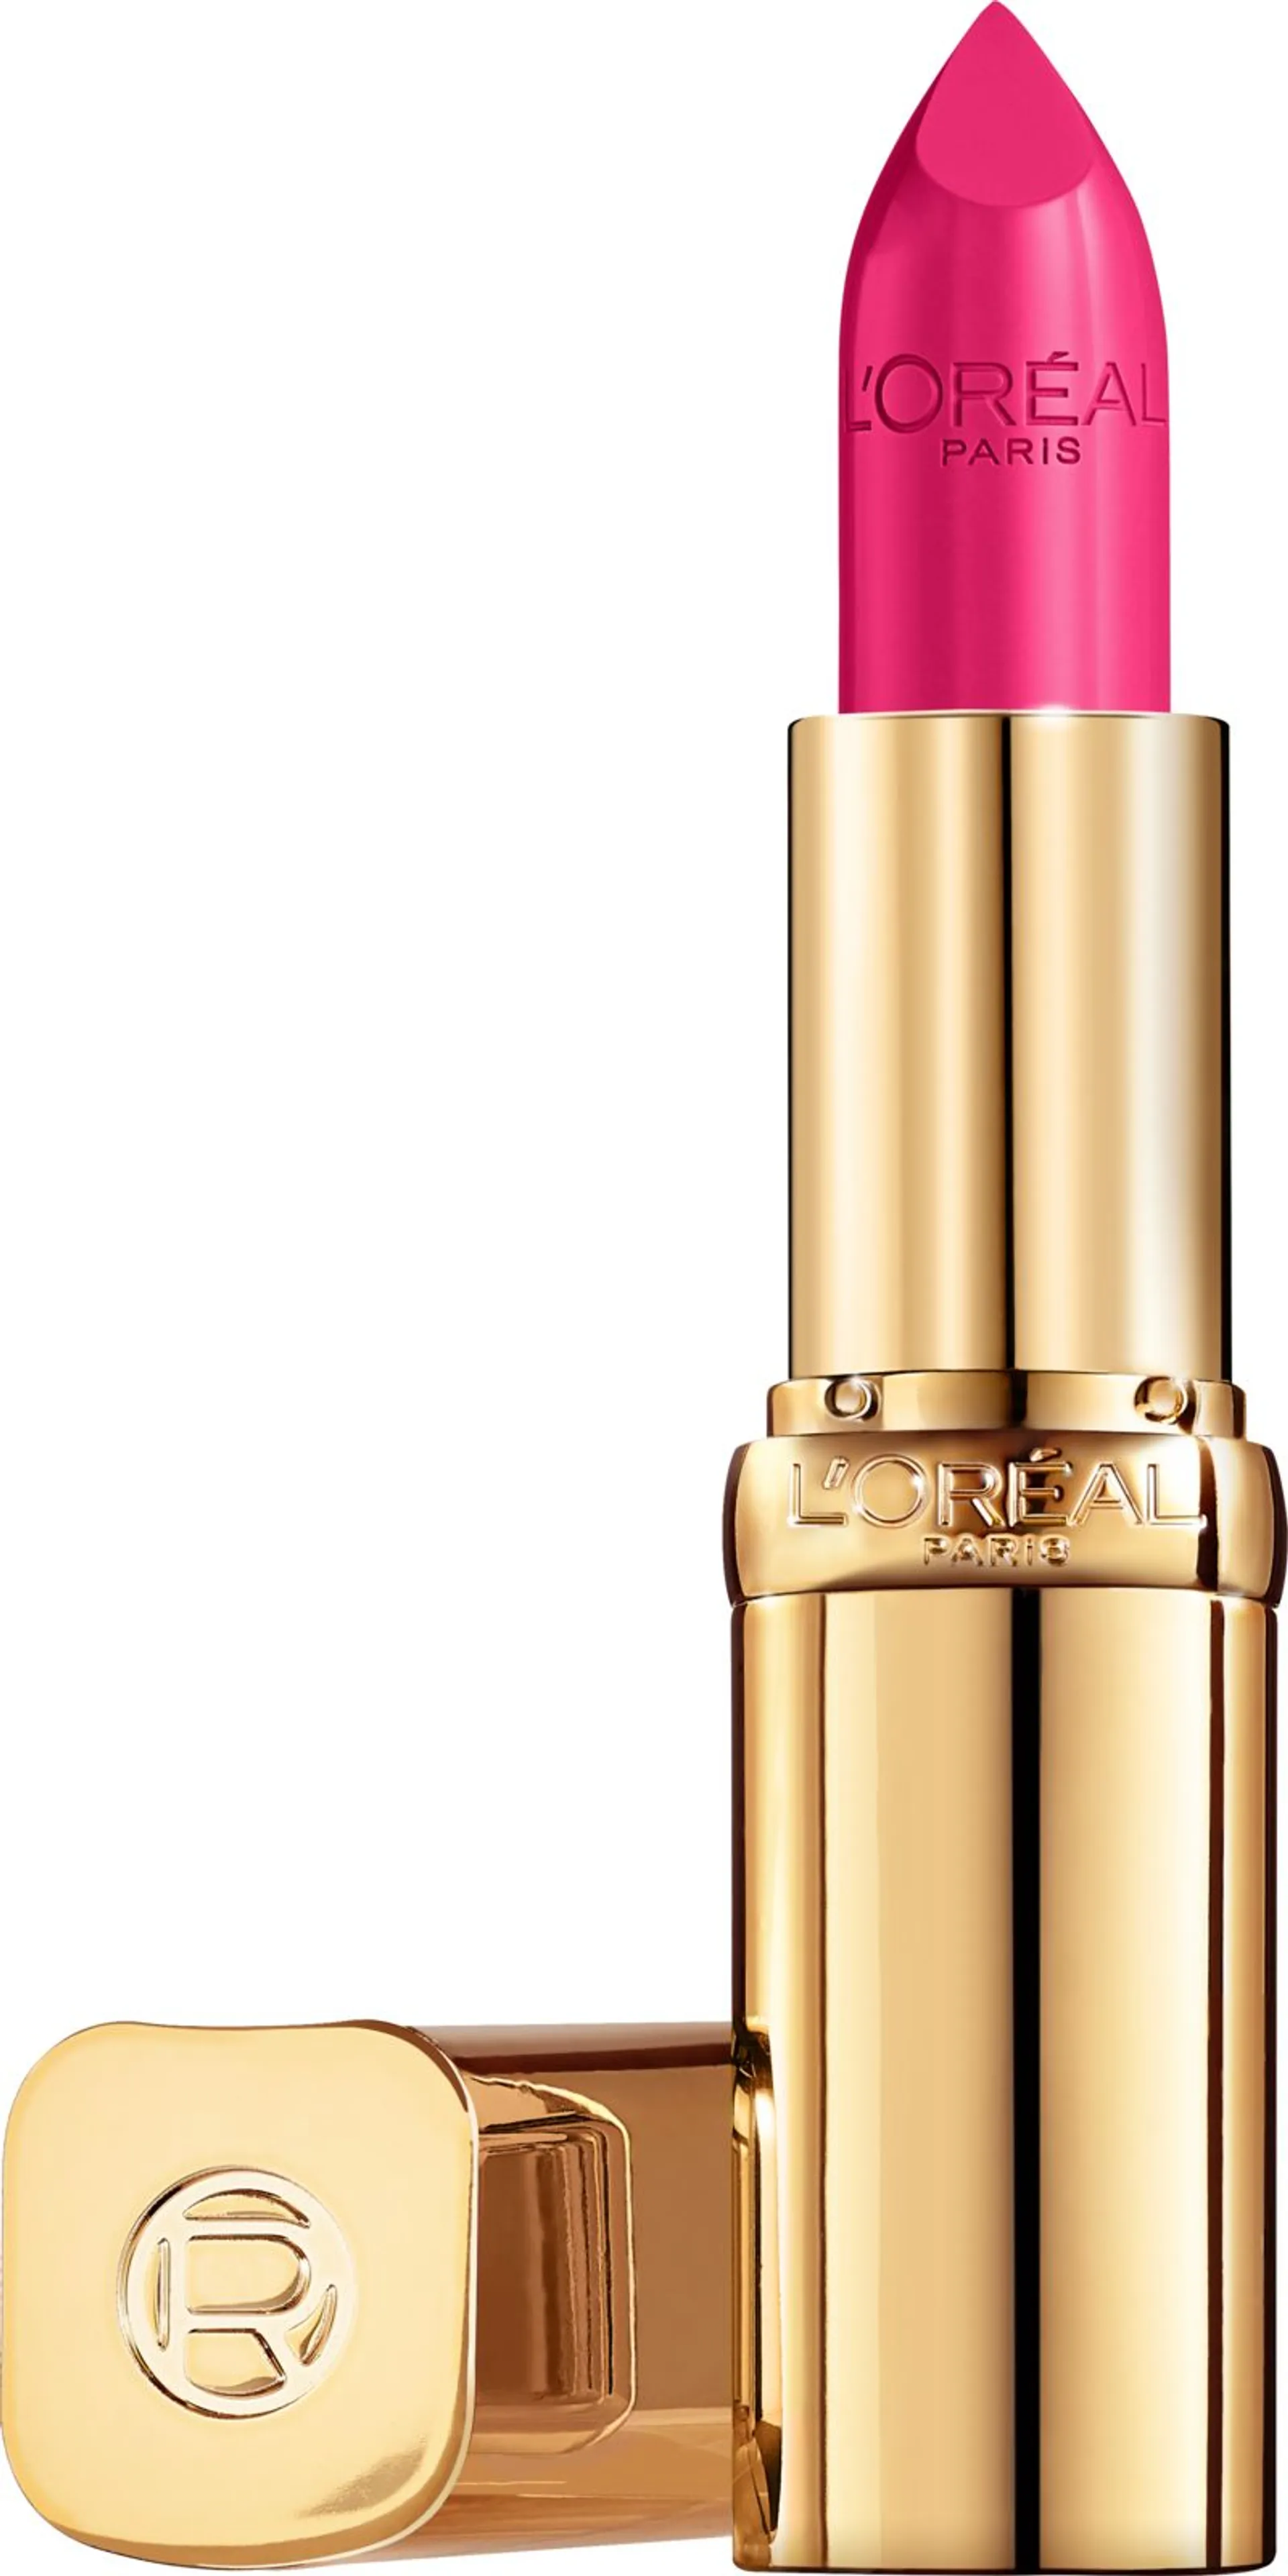 L'Oréal Paris Color Riche Satin 111 Oui huulipuna 4,8 g